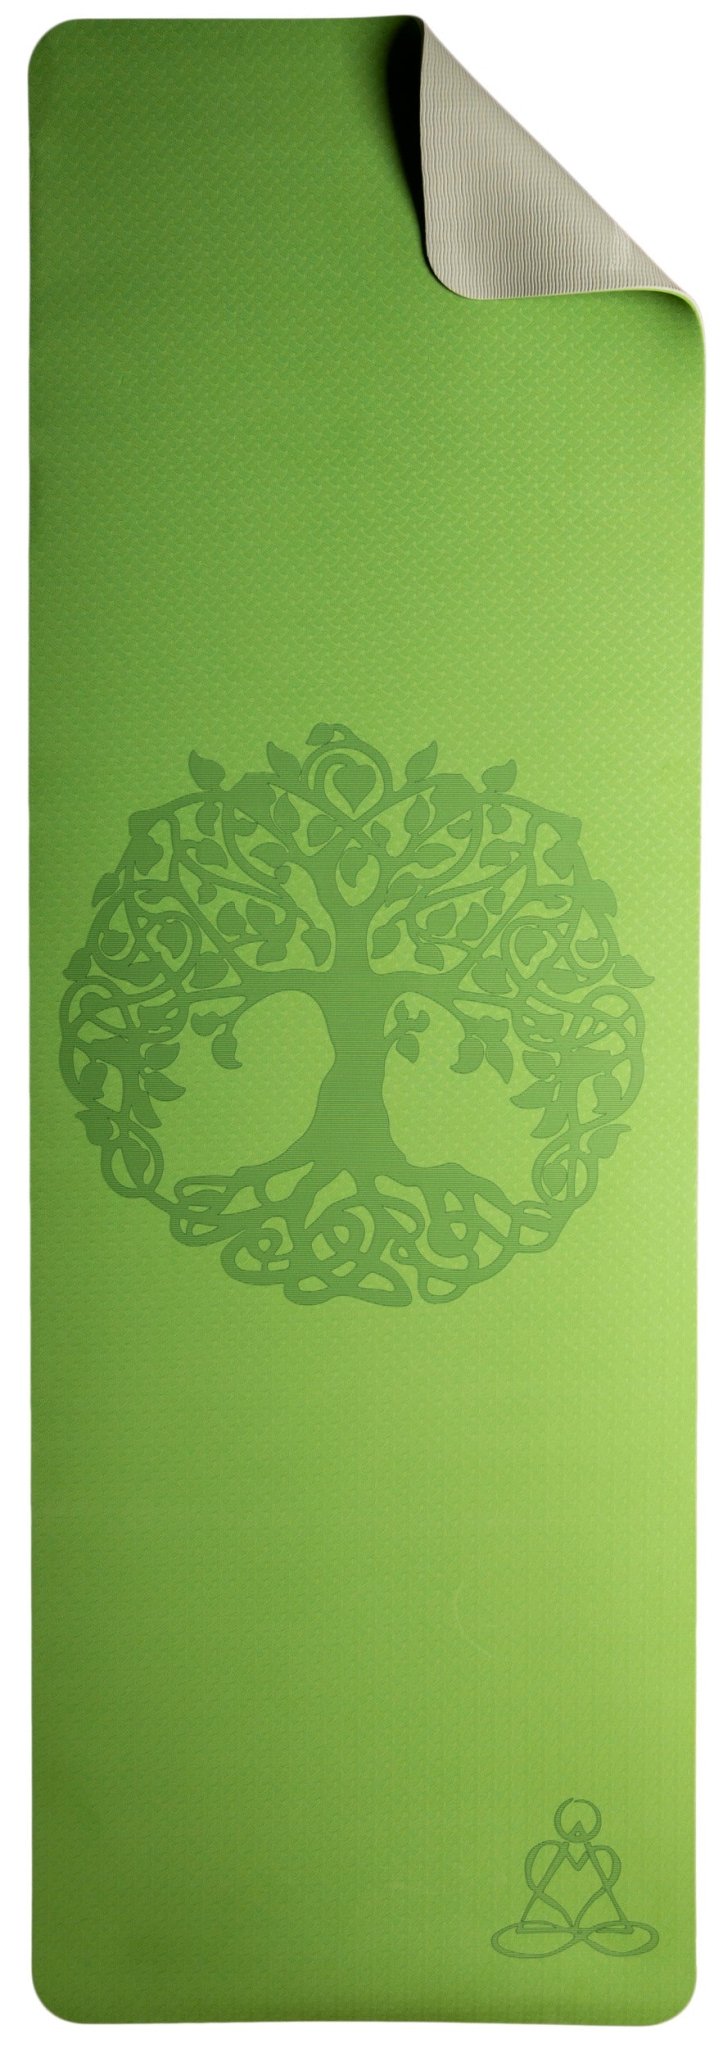 Yogamatte TPE ecofriendly - hellgrün / grau mit Baum des Lebens - Ritualmanufaktur.de